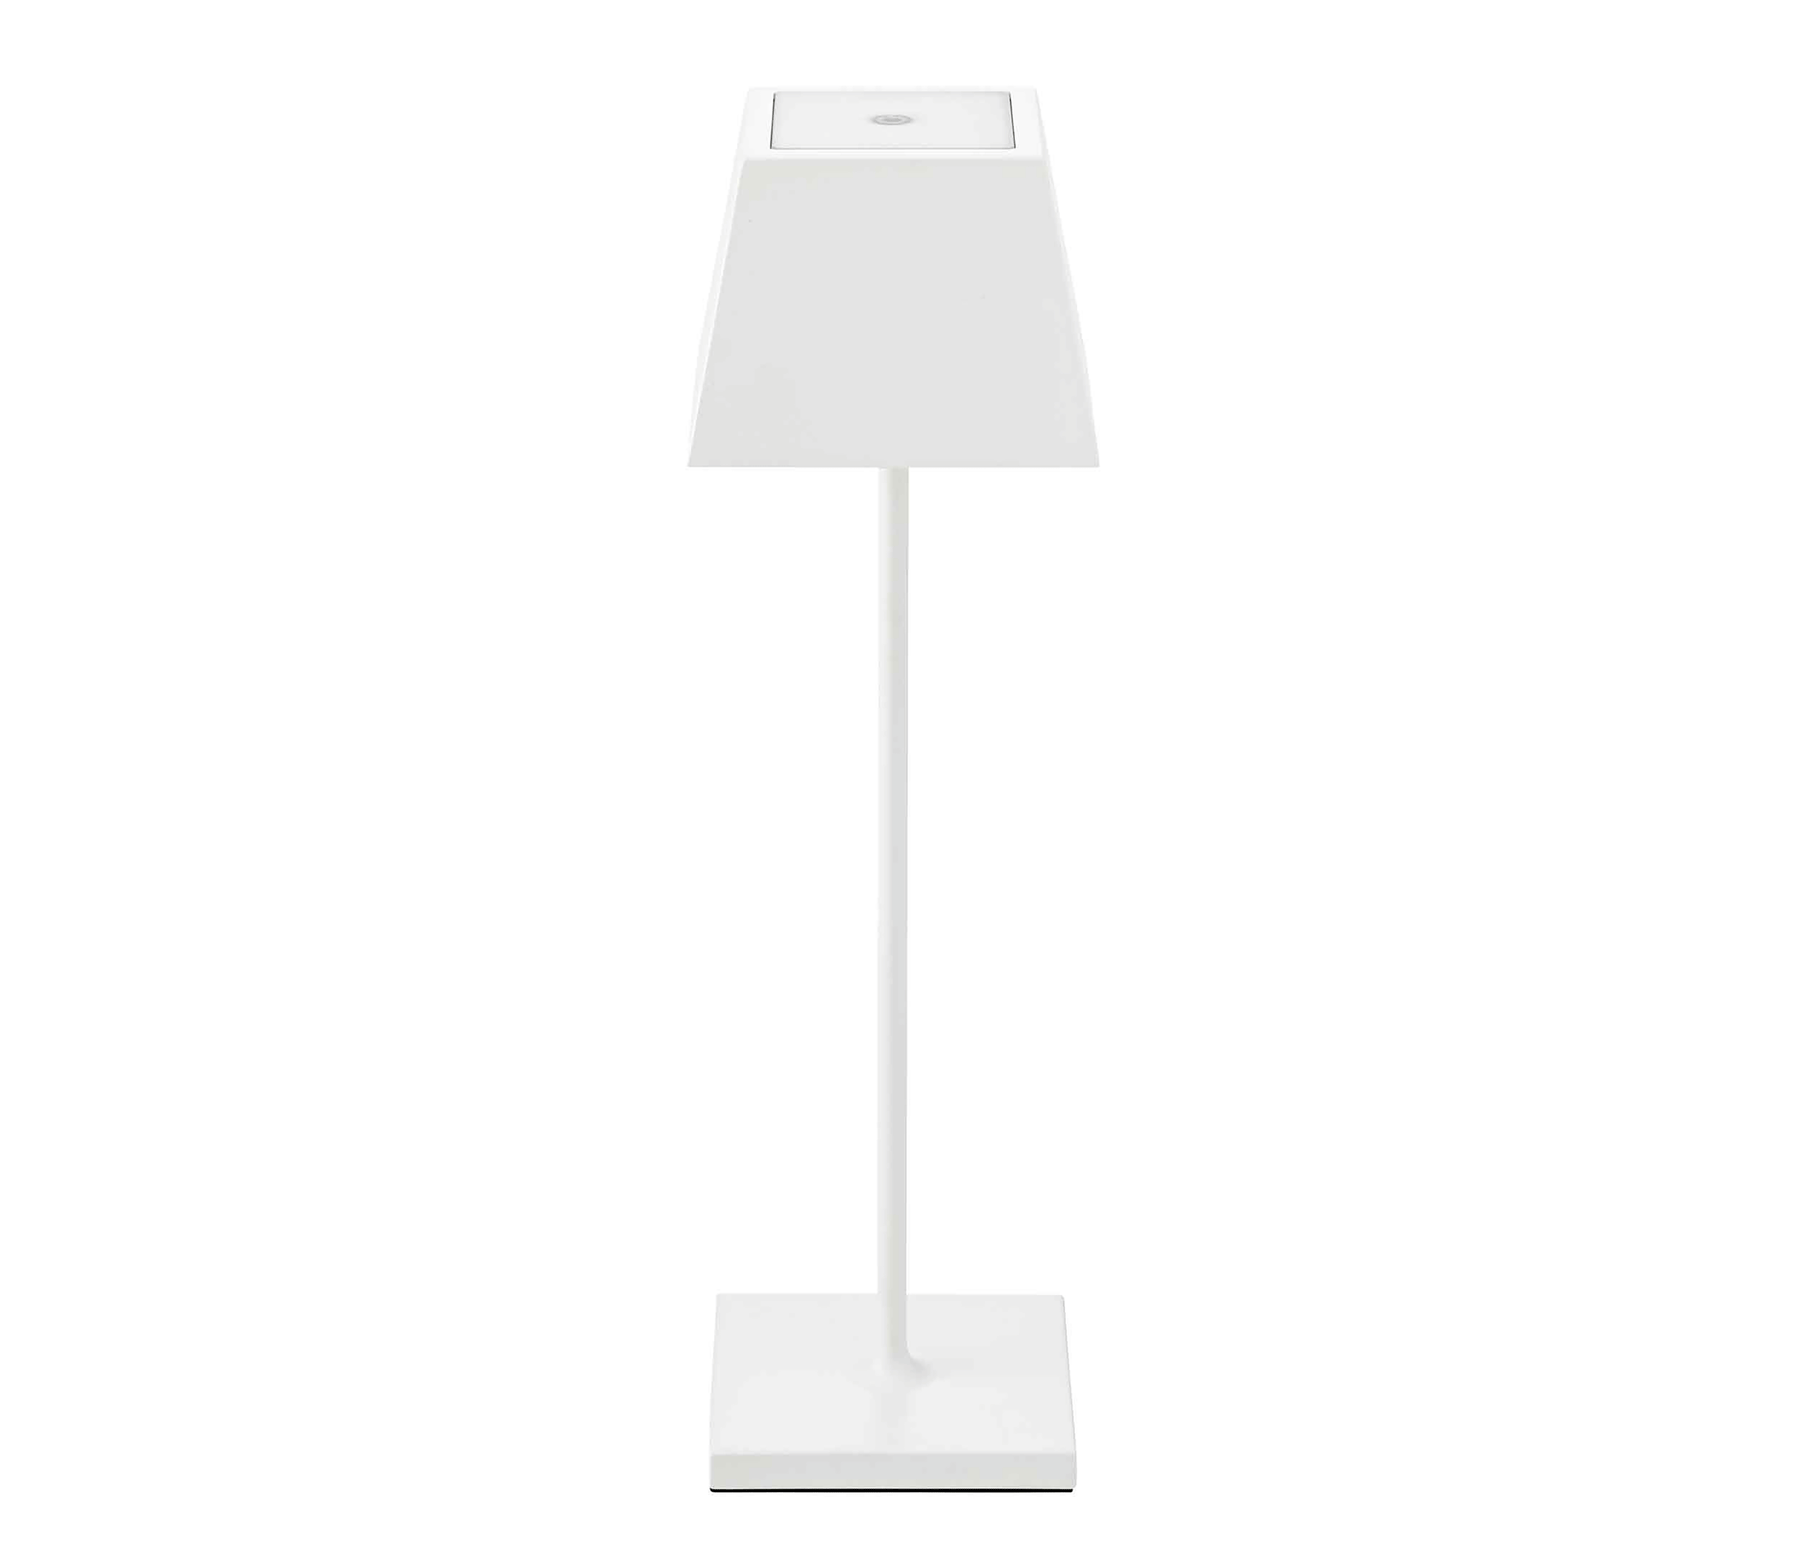 Sigor Nuindie Akku-Tischleuchte eckig LED weiß